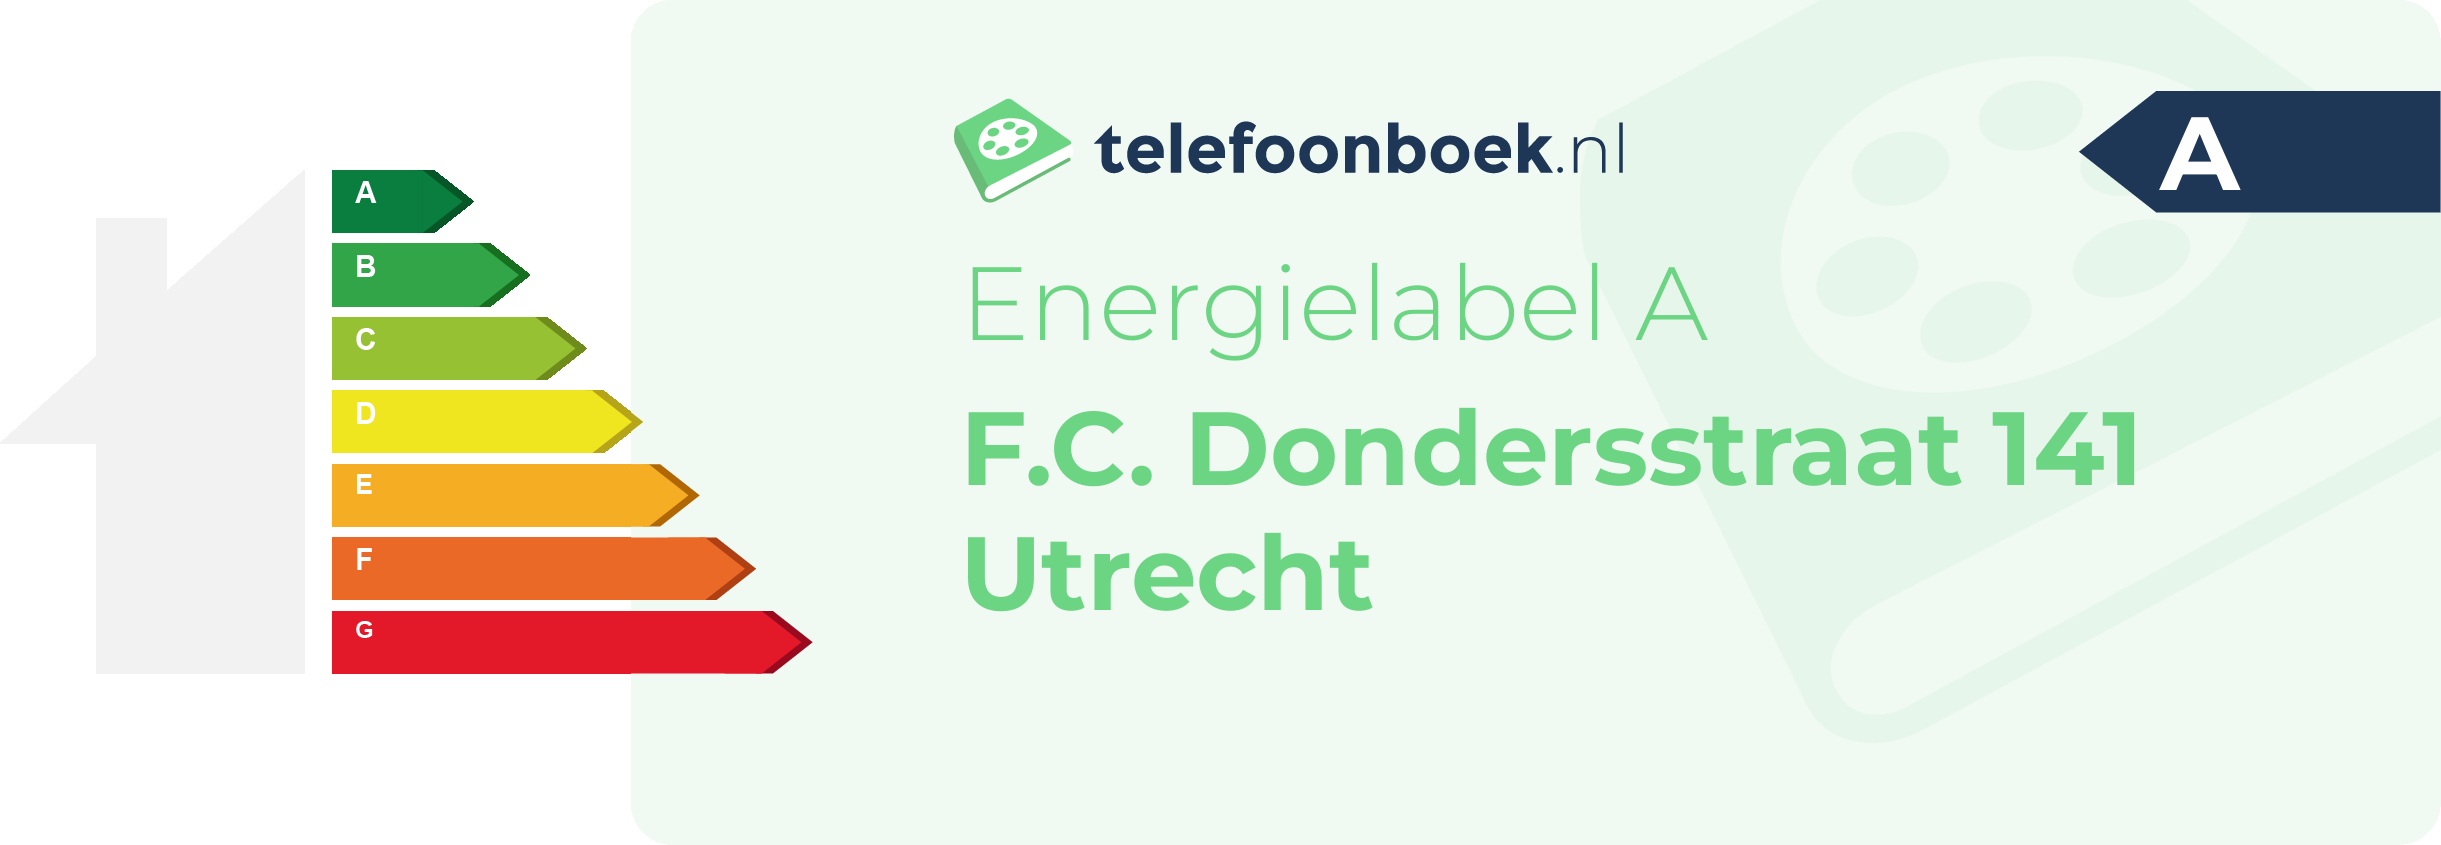 Energielabel F.C. Dondersstraat 141 Utrecht